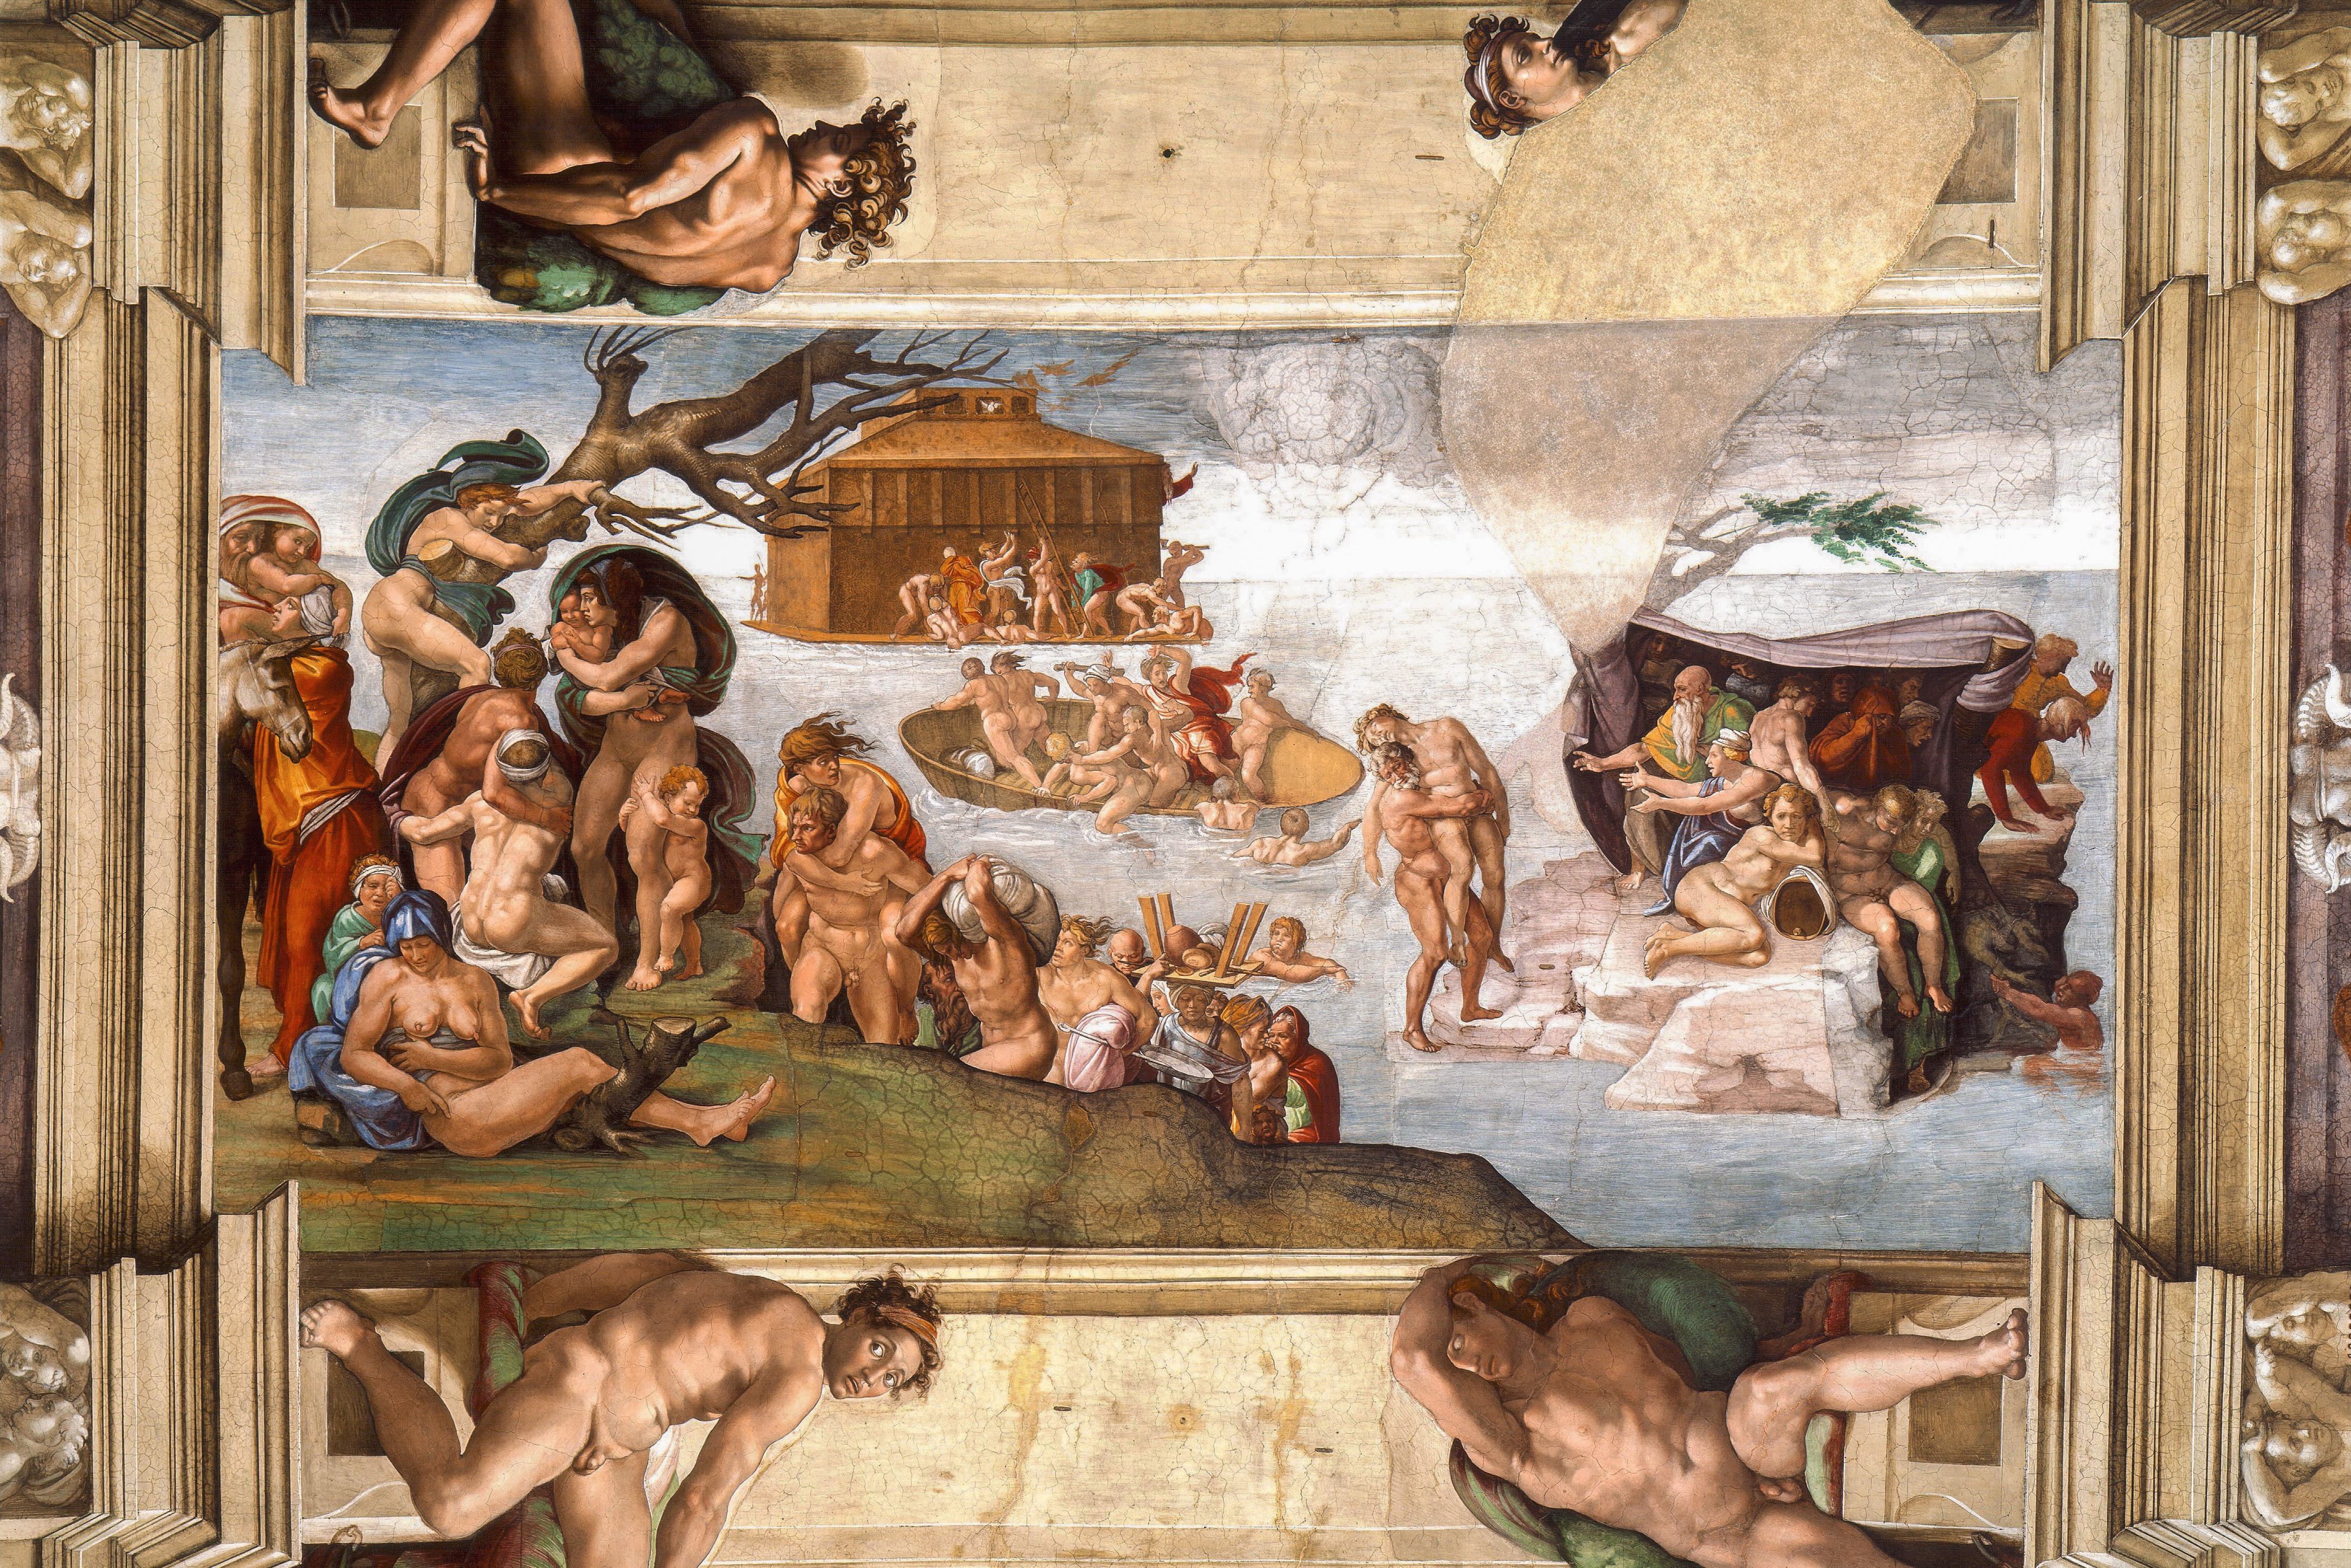 Giudizio Universale. Michelangelo and the Secrets of the Sistine Chapel  Roma Auditorium della Conciliazione dal 15 marzo 2018 - FOTO 5 - Arte.it